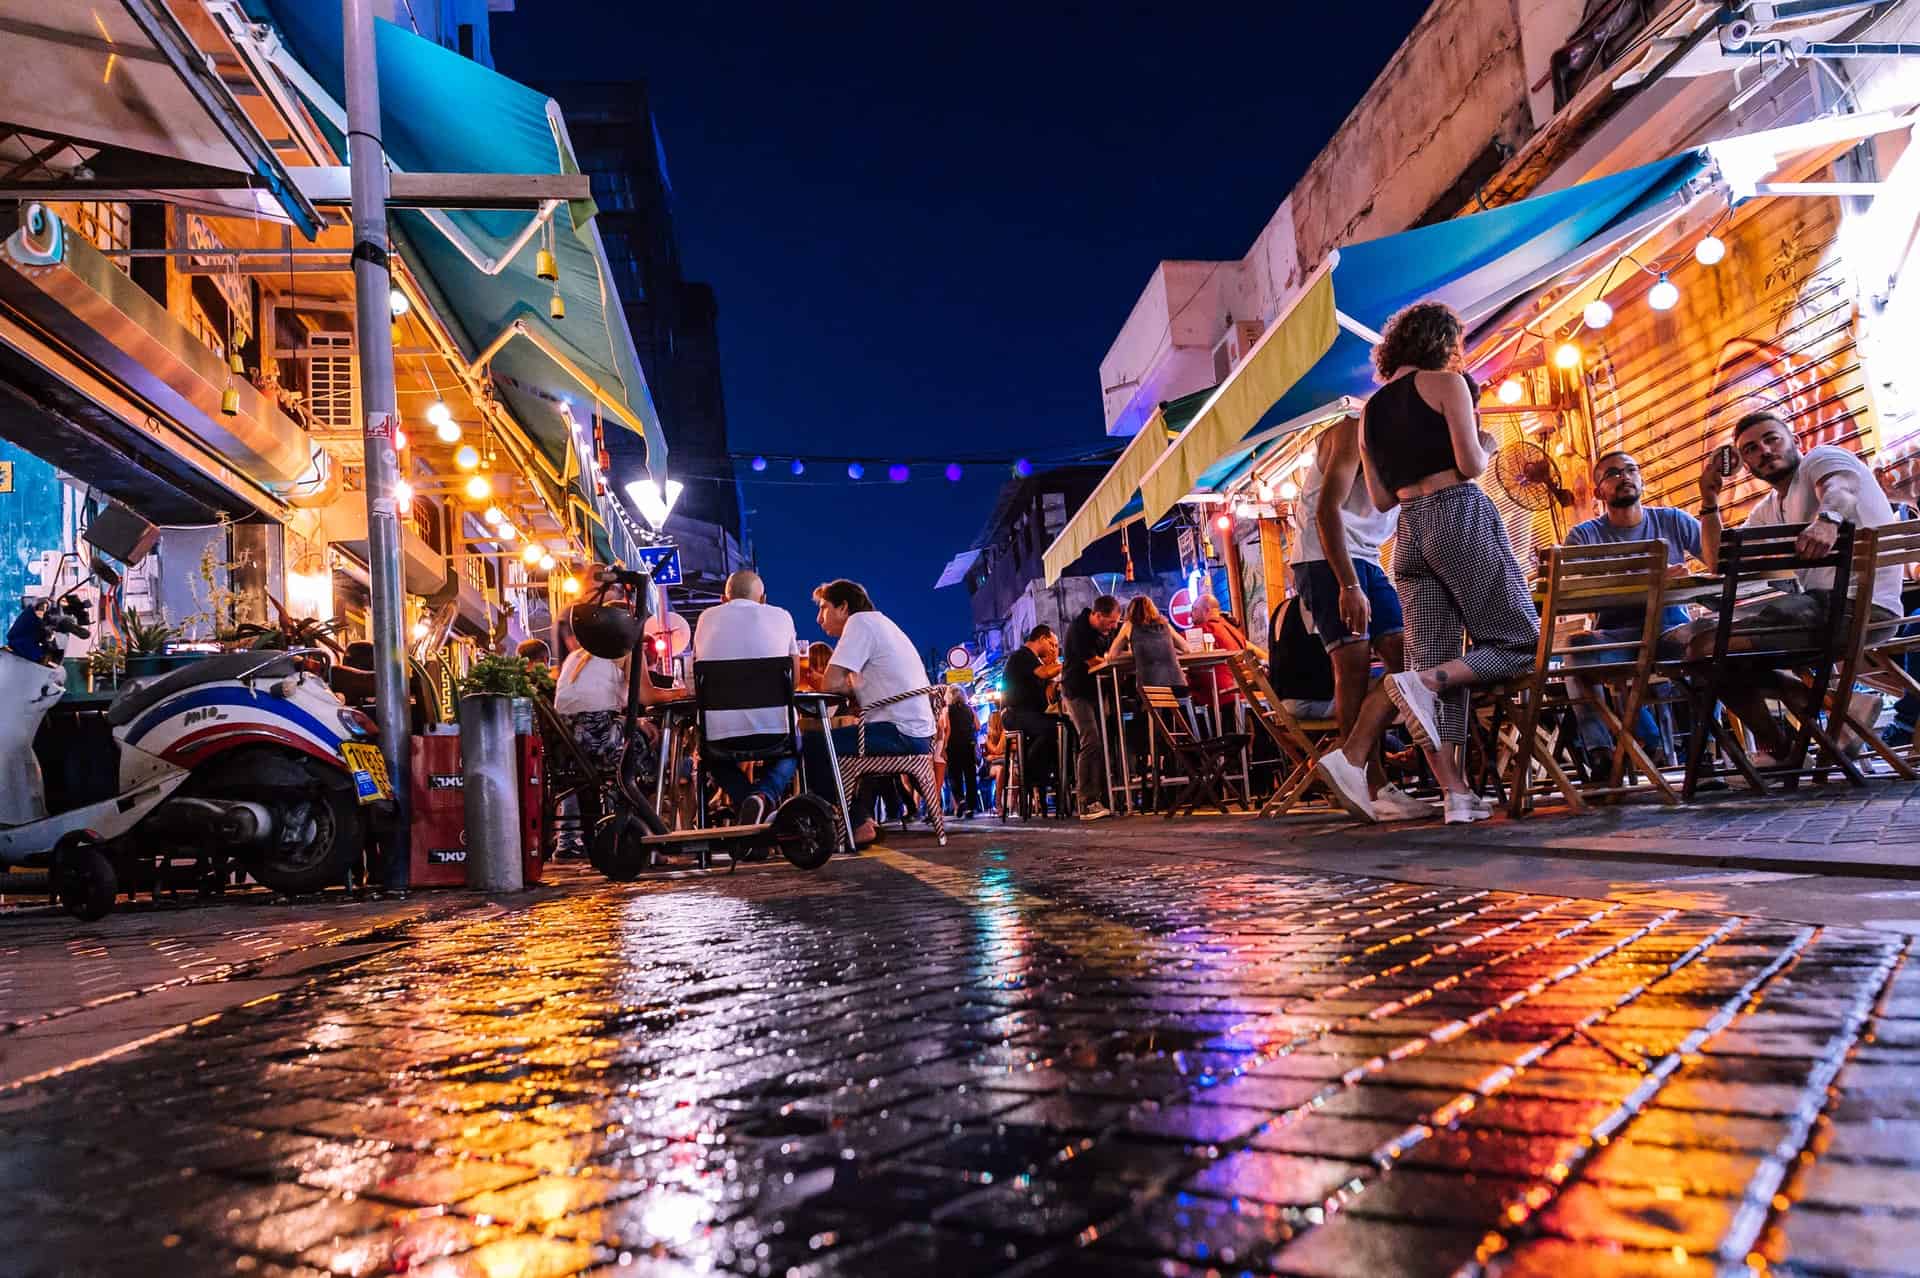 Best things to do in Tel Aviv Israel - Mark Gordon - Outdoor dining in Jaffa by Yaroslav Lutsky on Unsplash